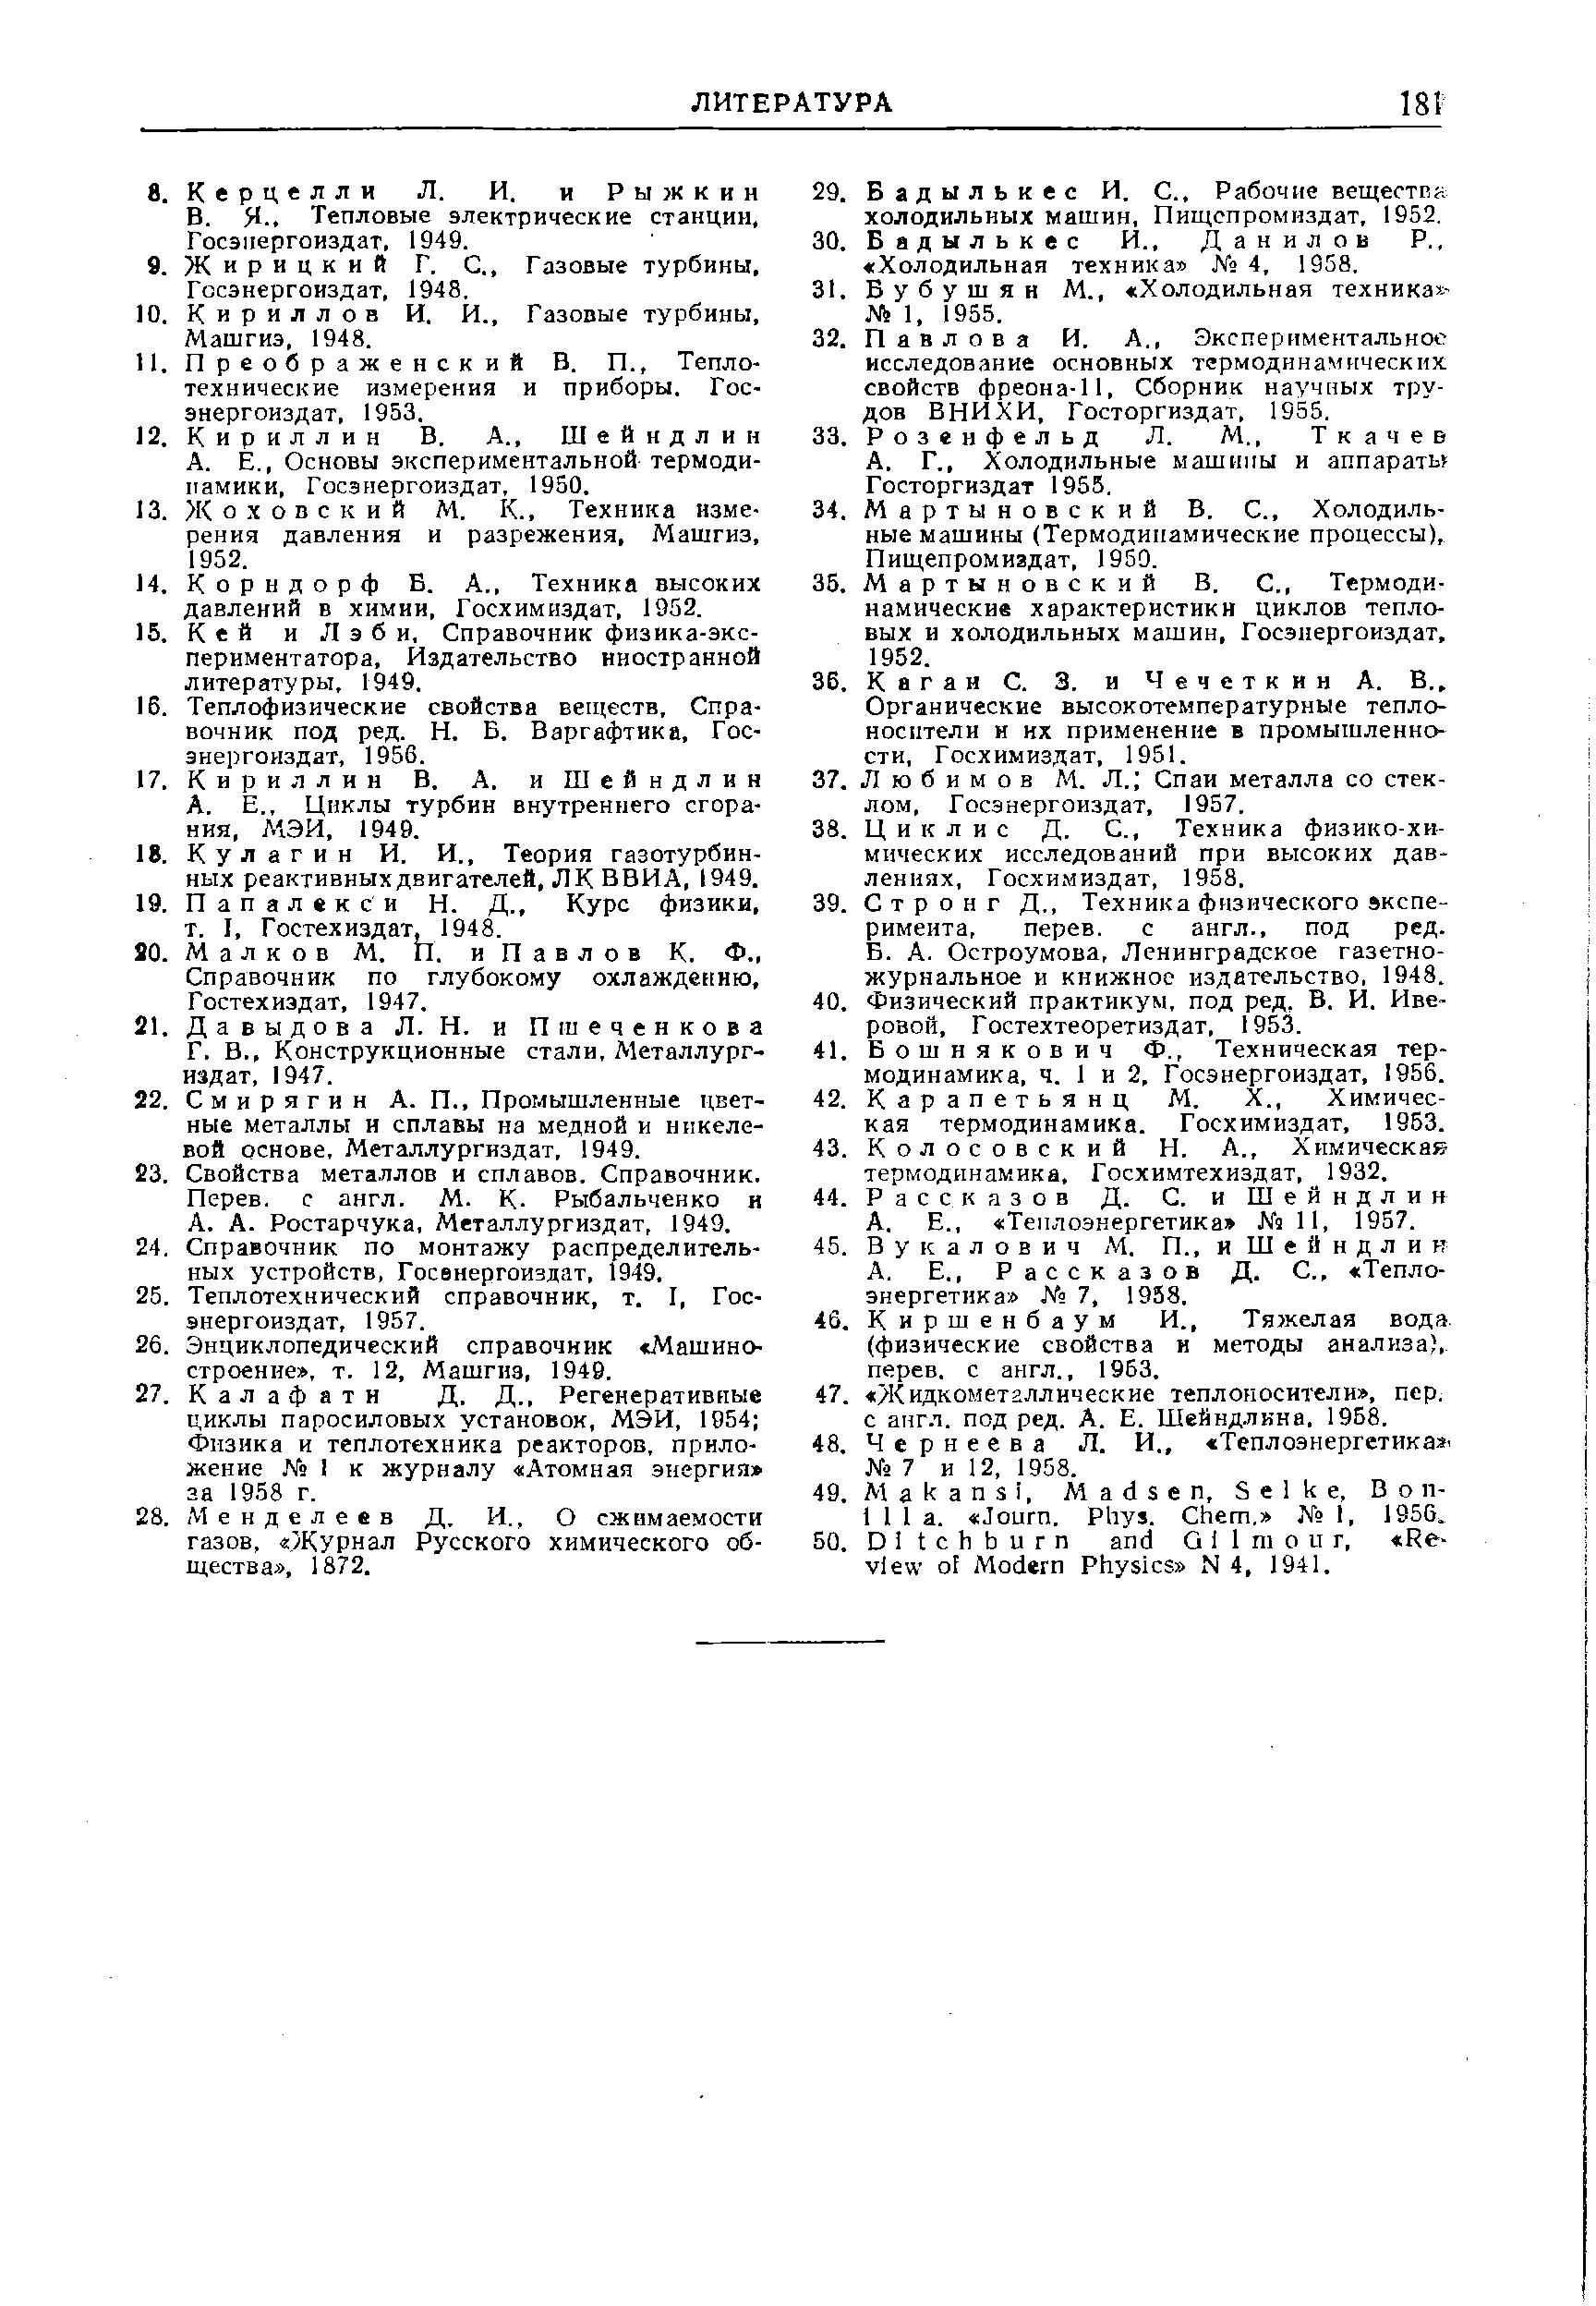 Конструкционные стали. Металлург- 41. издат, 1947.
